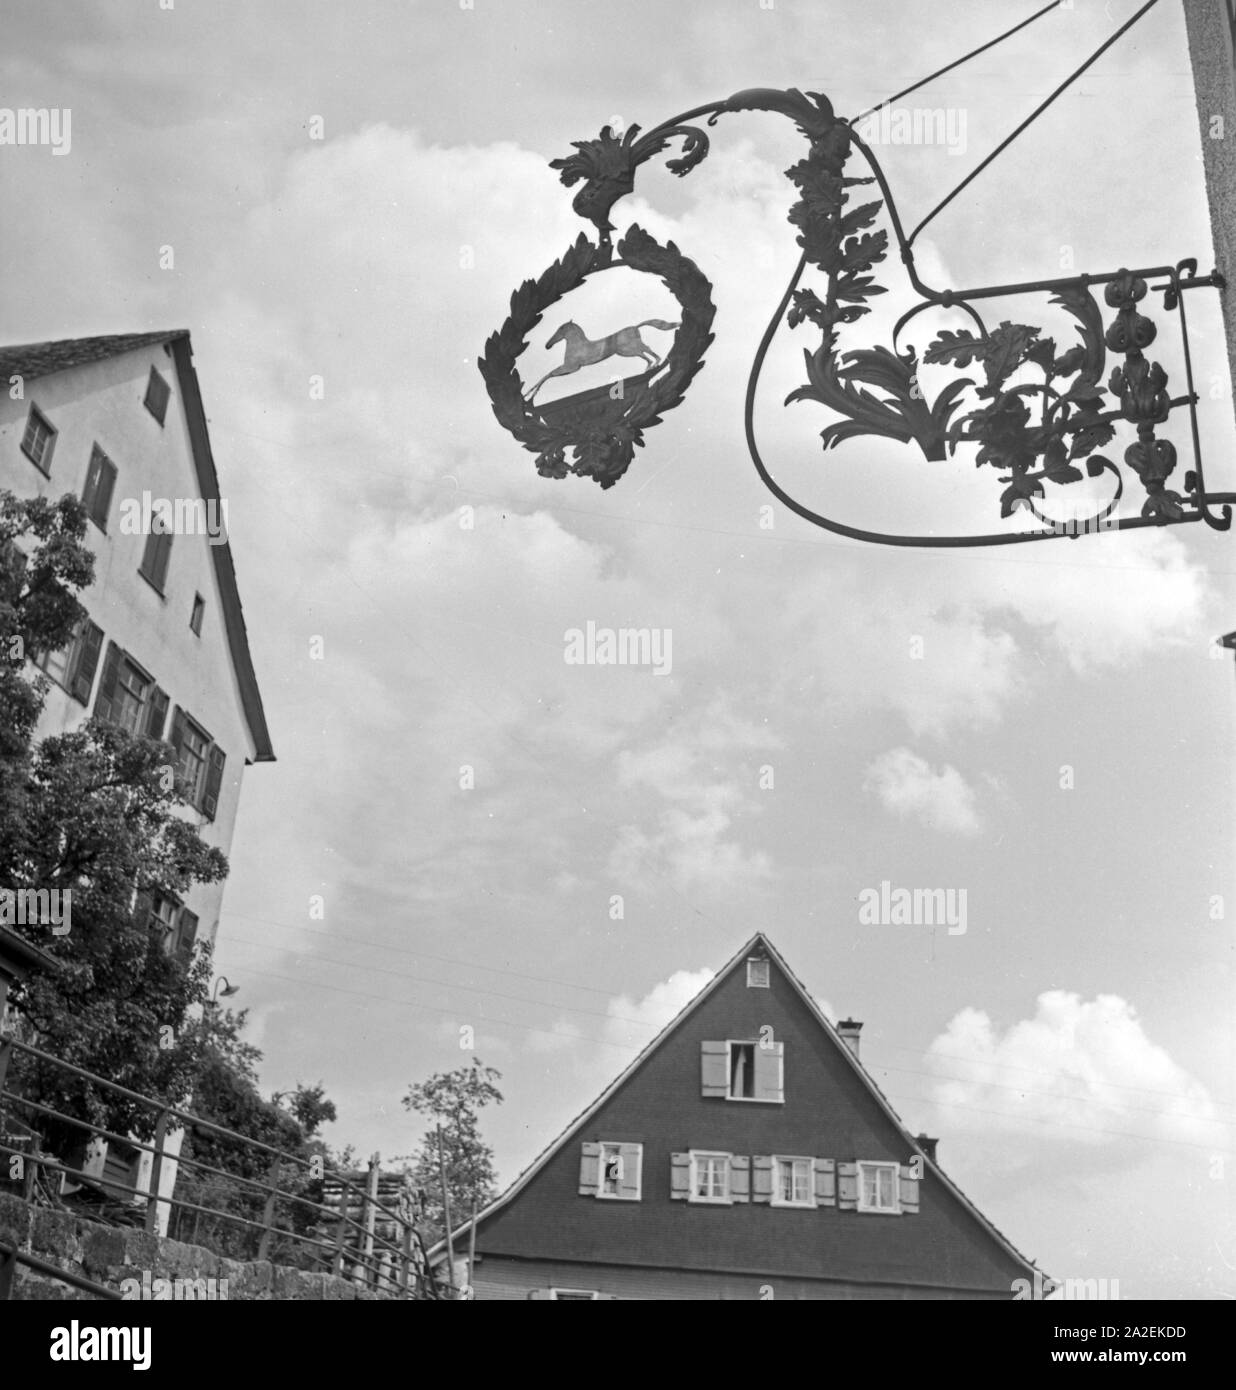 Wirtshausschild in Altensteig an der Nagold, Deutschland 1930er Jahre. Pub segno nella città di Altensteig al fiume Nagold, Germania 1930s. Foto Stock